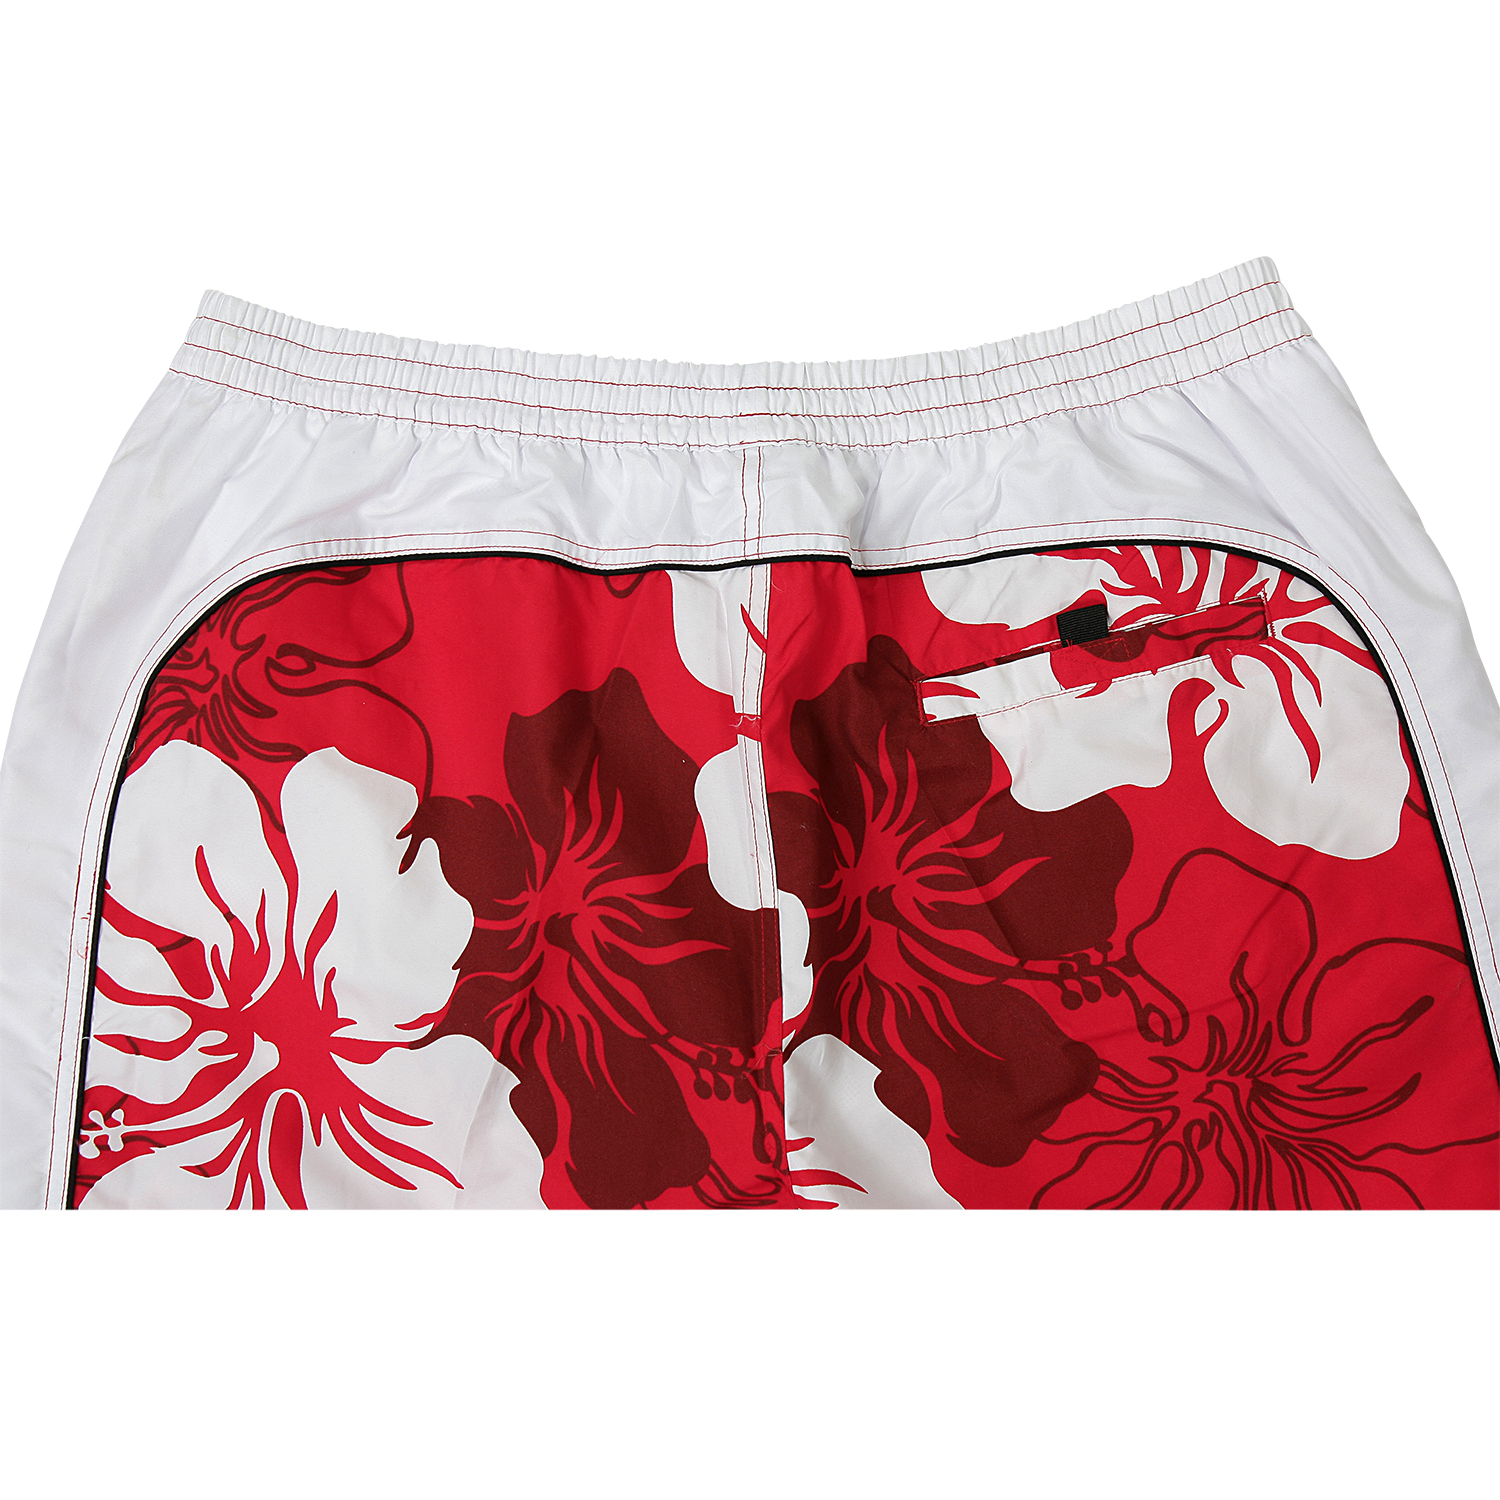 Bermuda de bain en rouge et blanc avec imprimé de fleurs by eleMar en grandes tailles jusqu'au 9XL